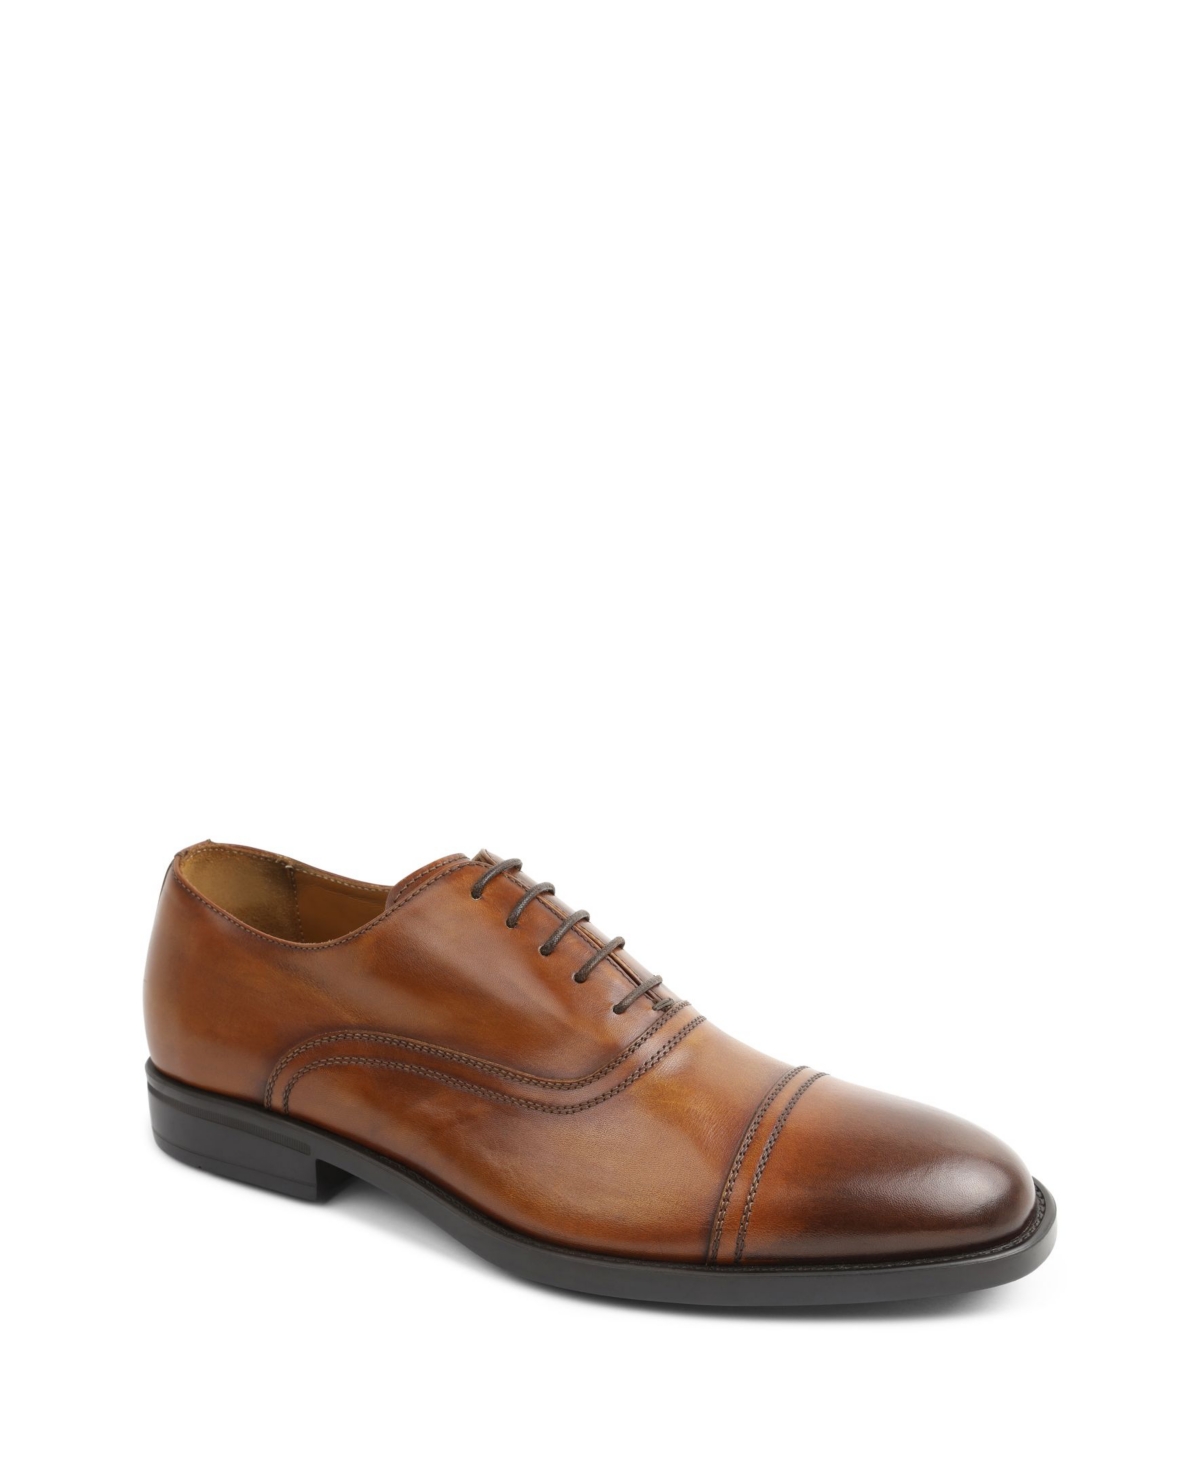 Men's Butler Cap Toe Oxford Dress Shoes - Cognac Leather